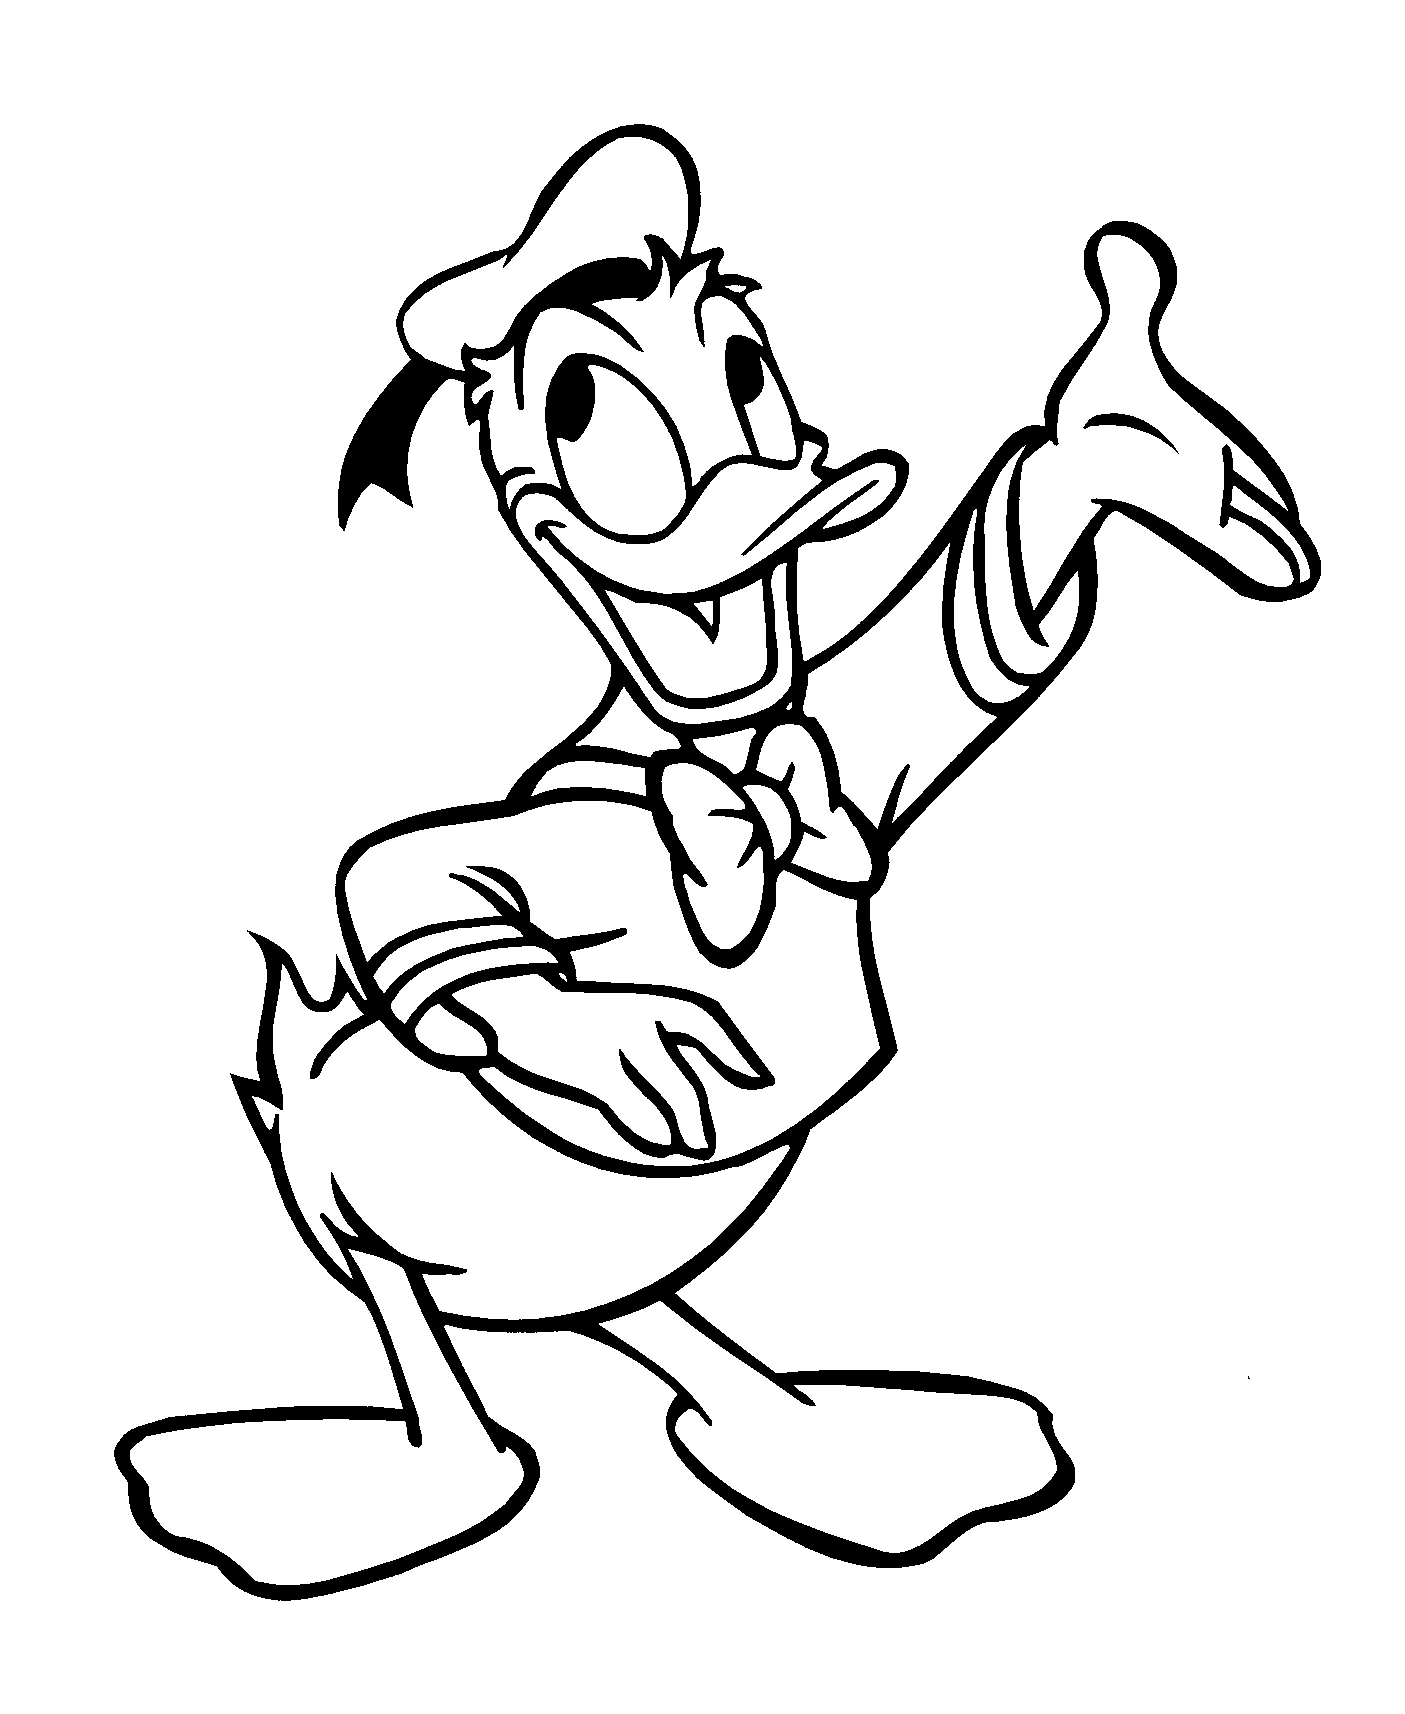 Donald Duck the bonne humour